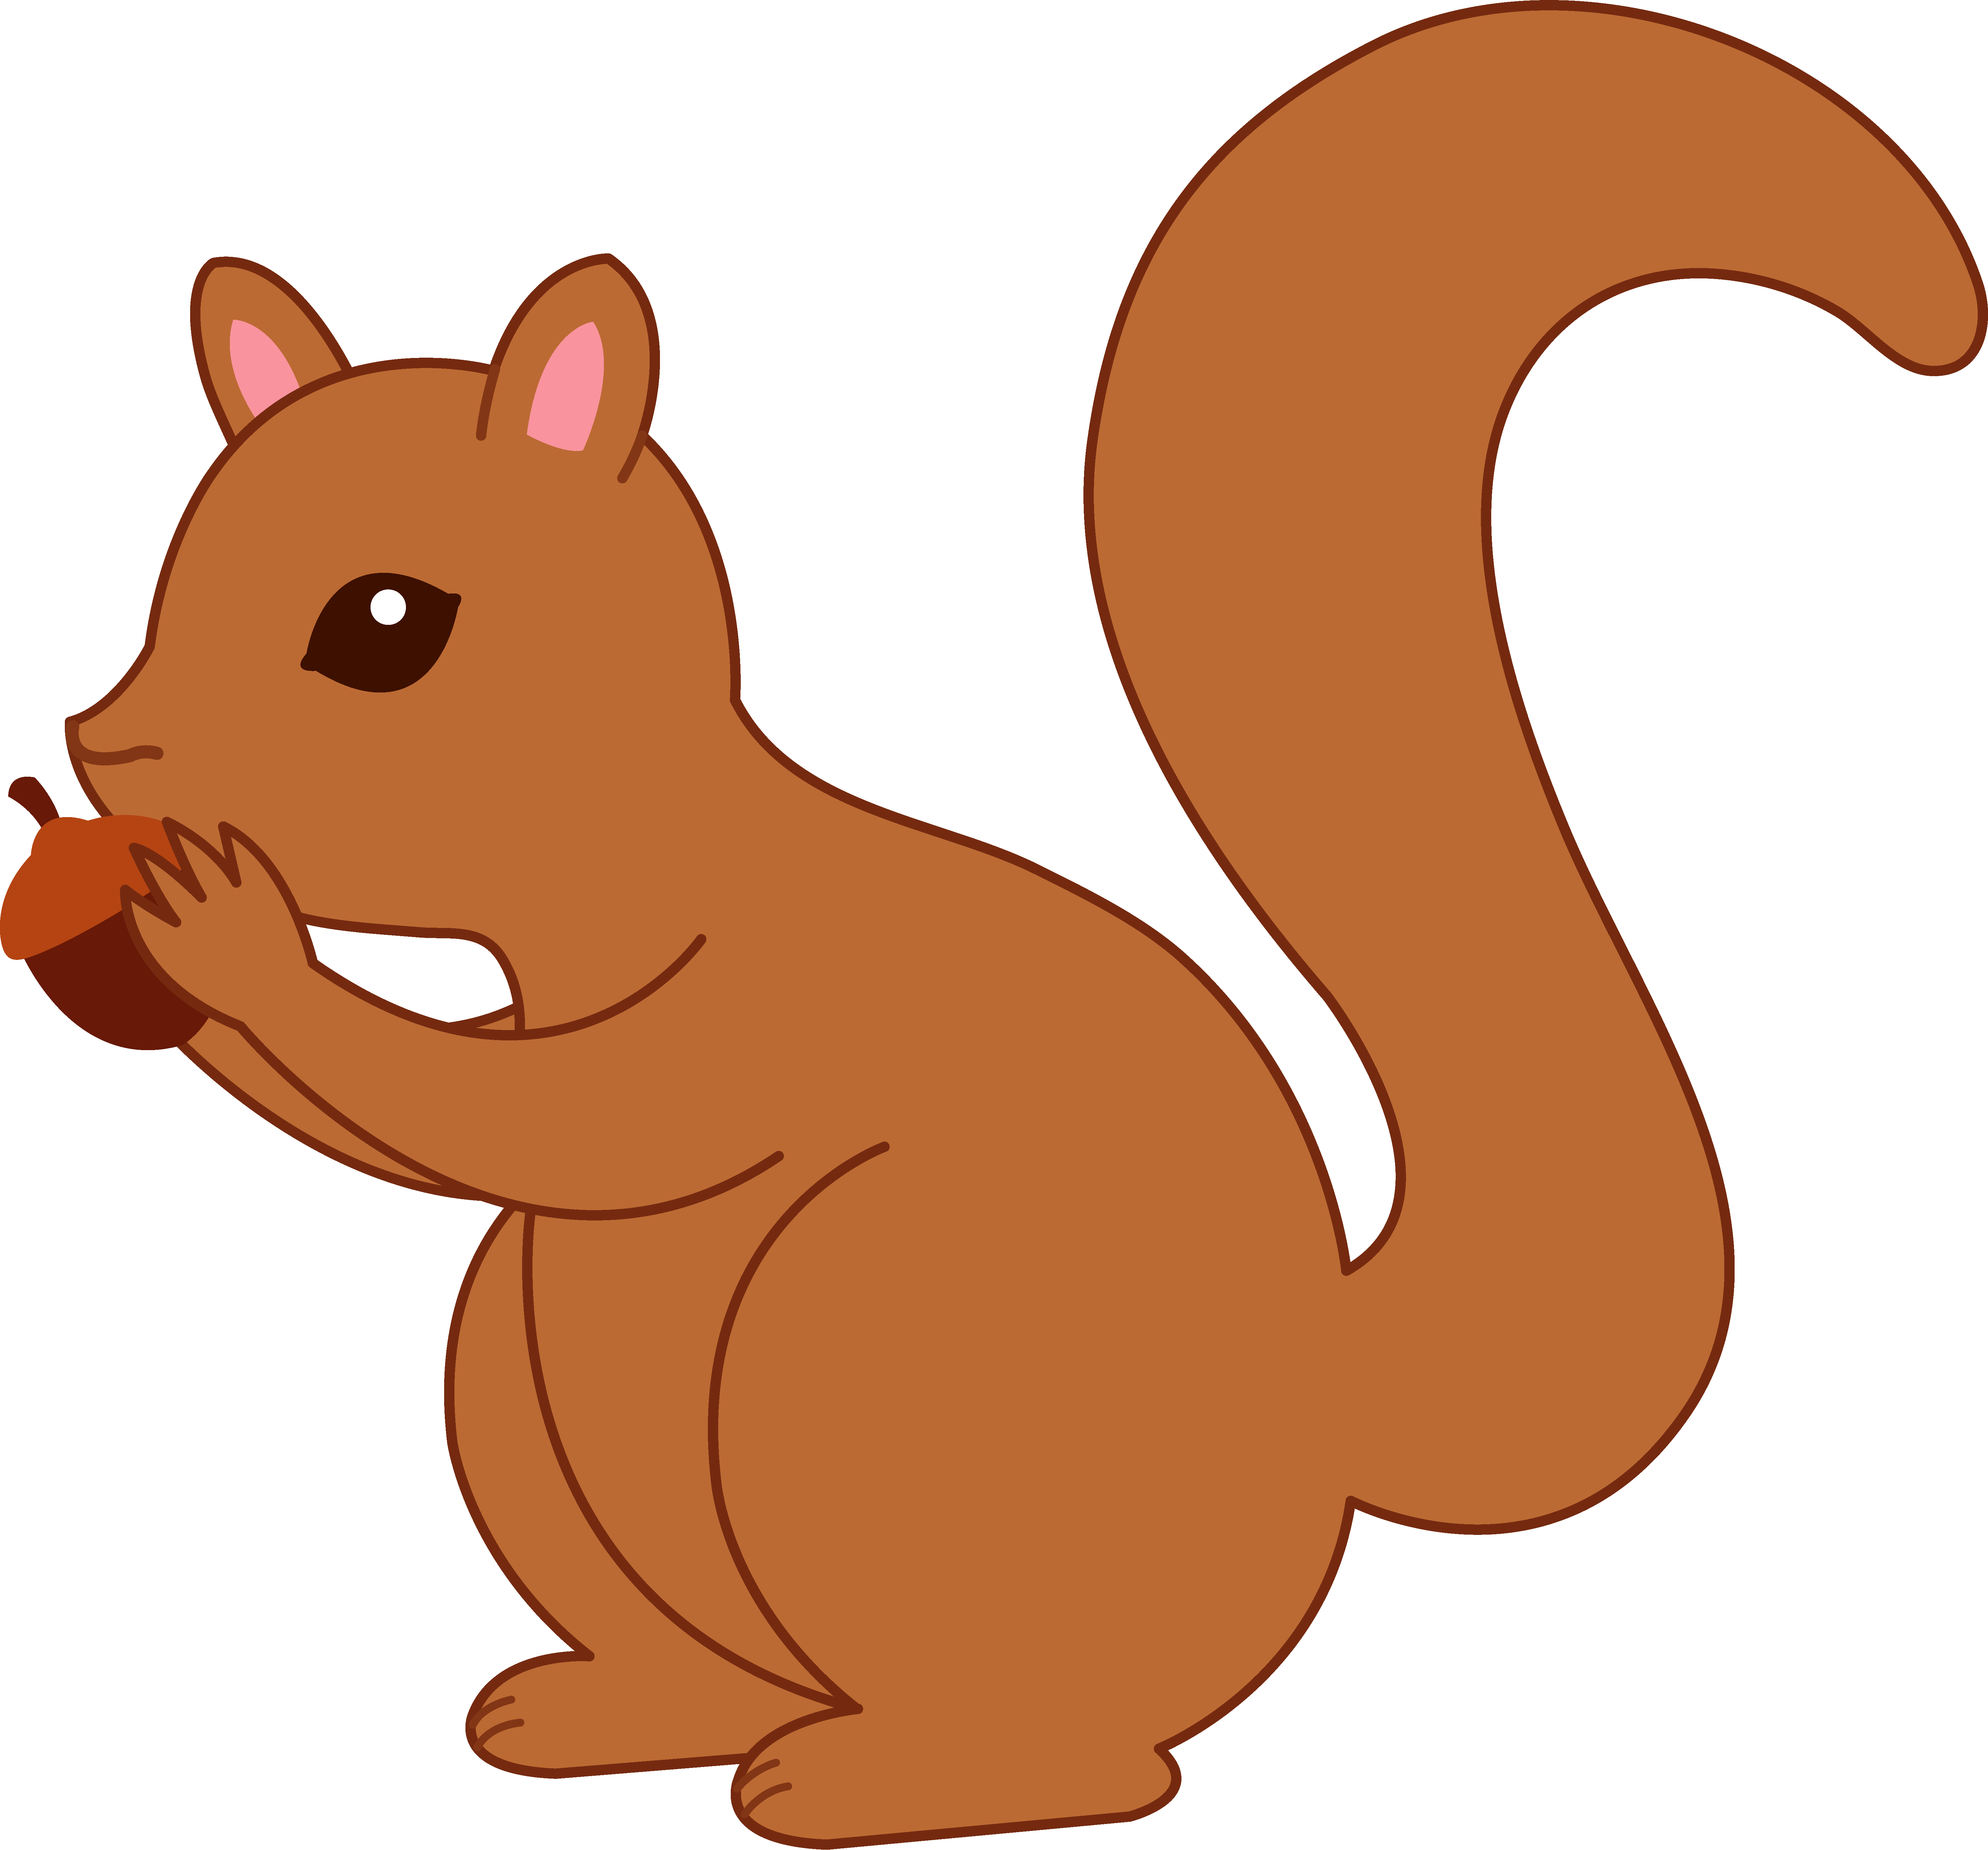 cute baby squirrel cartoon